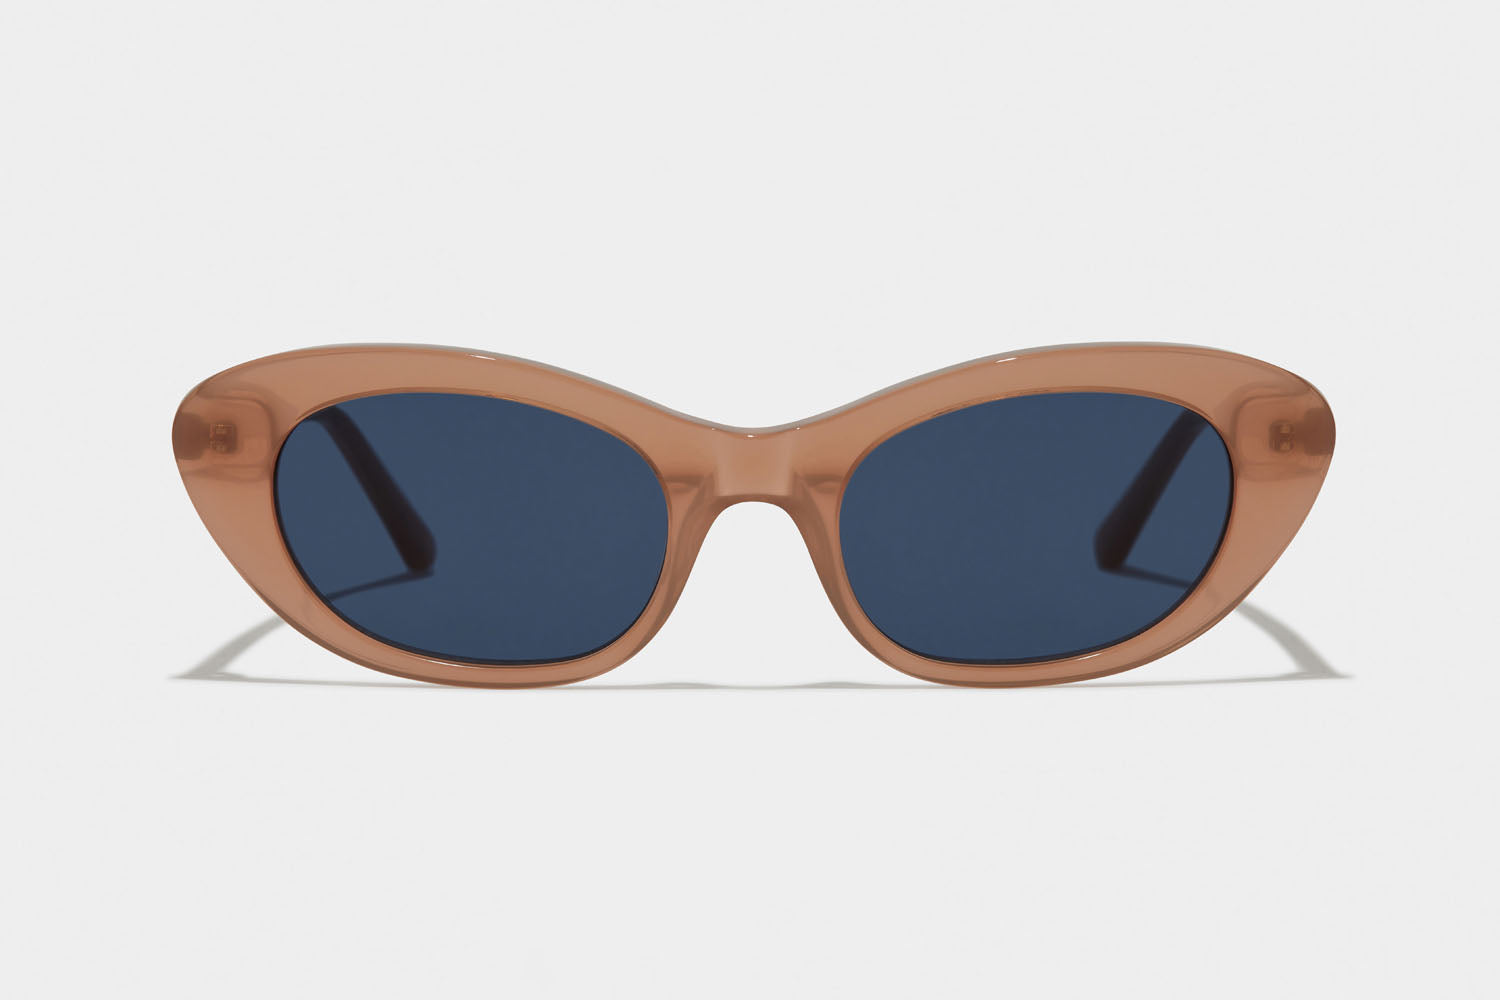 www.enkieyewear.com Bia Women’s Sunglasses